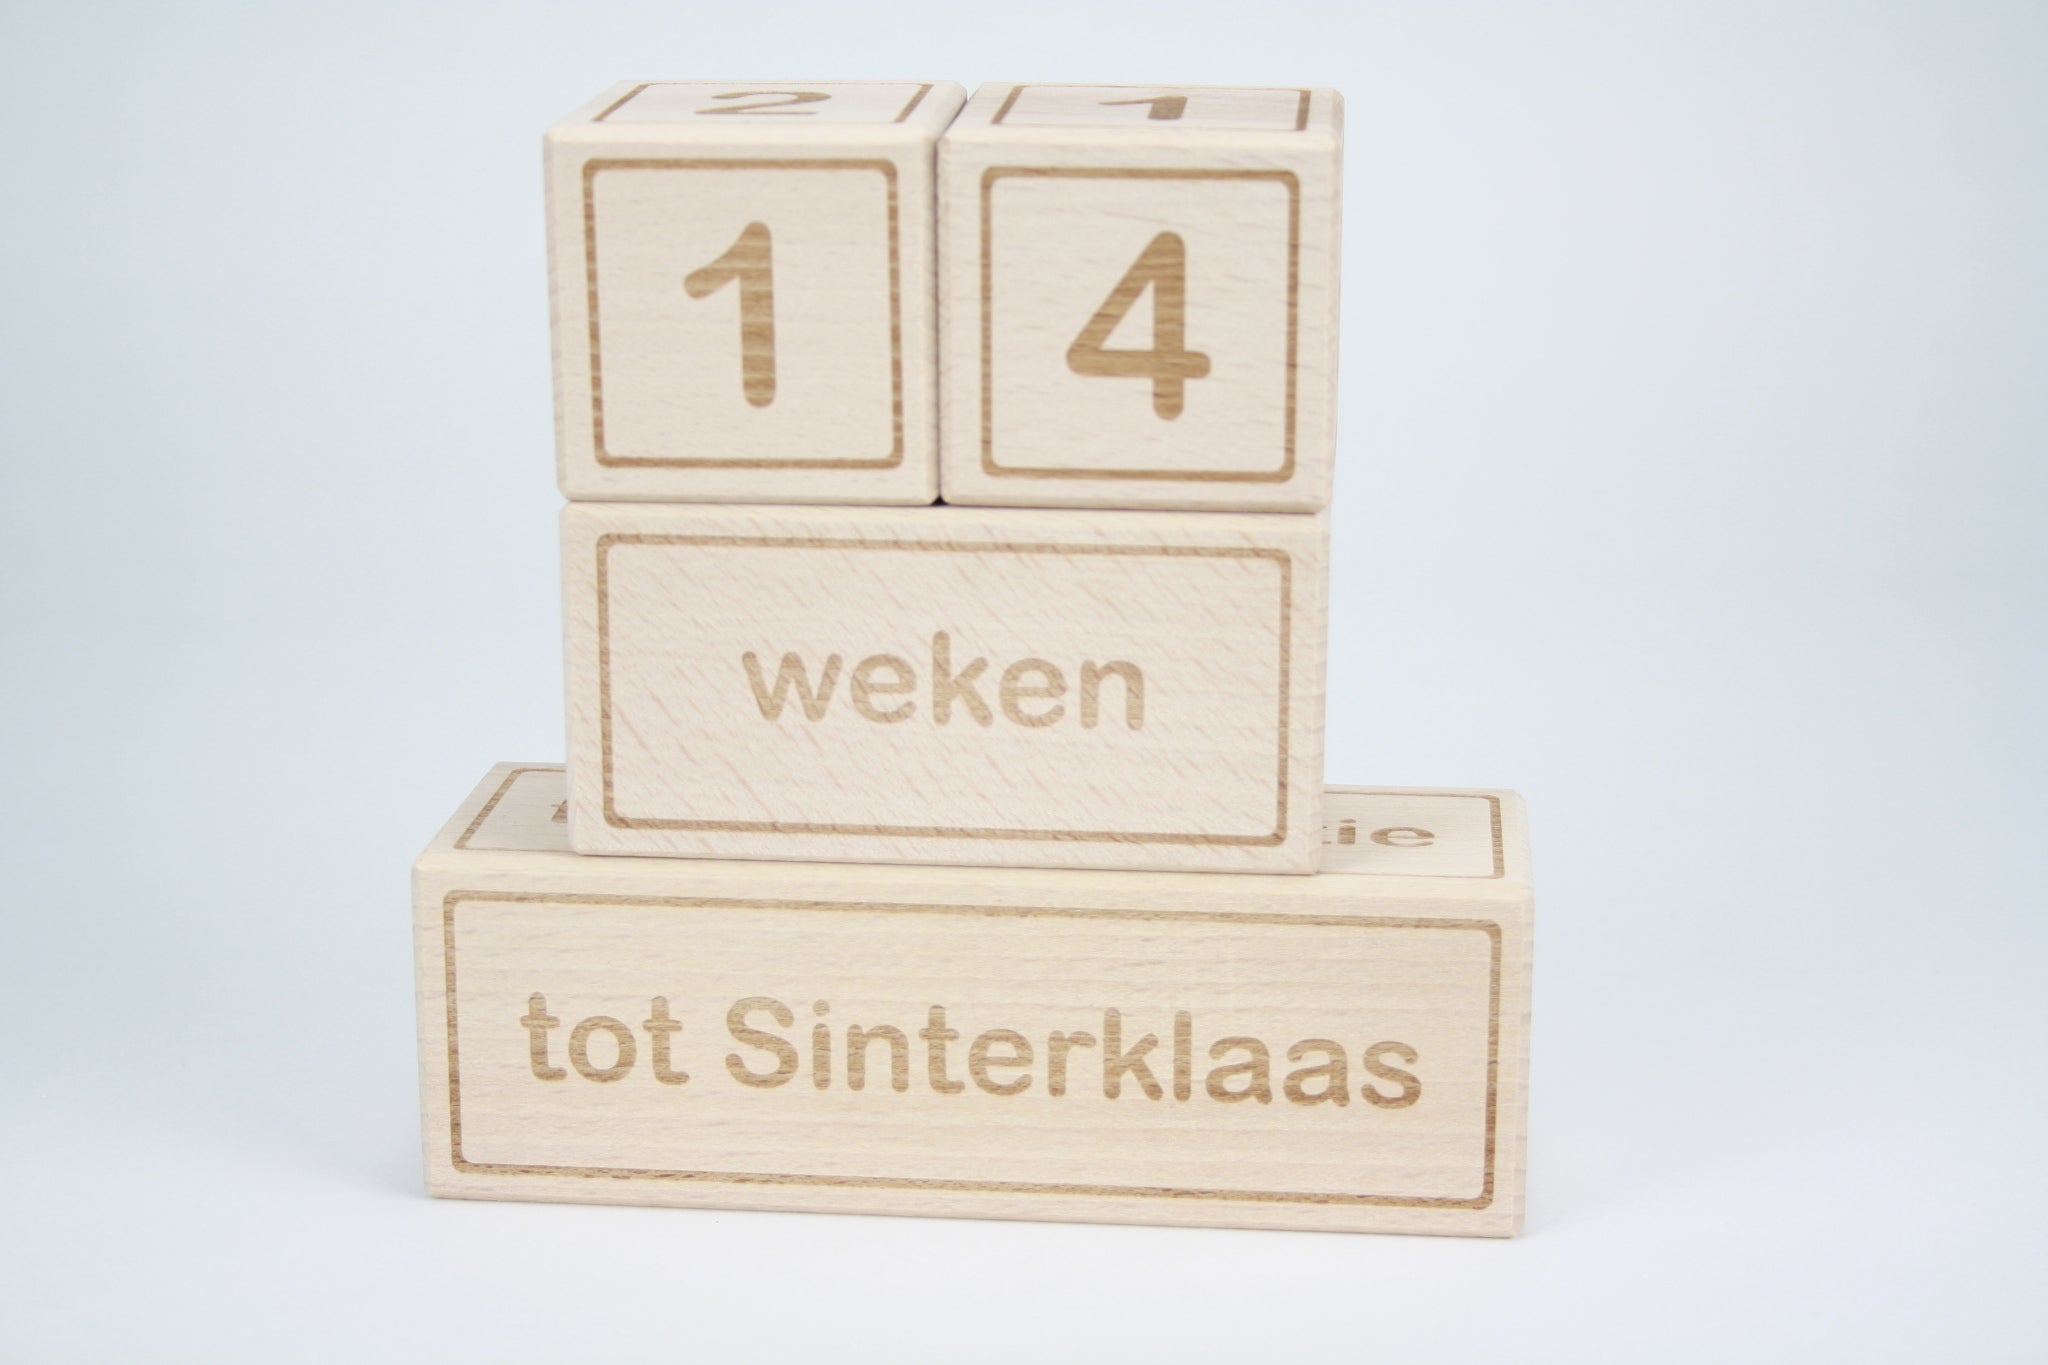 Houten aftelblokken met gegraveerde tekst. aantal nachtjes, dagen, weken, maanden tot Sinterklaas.